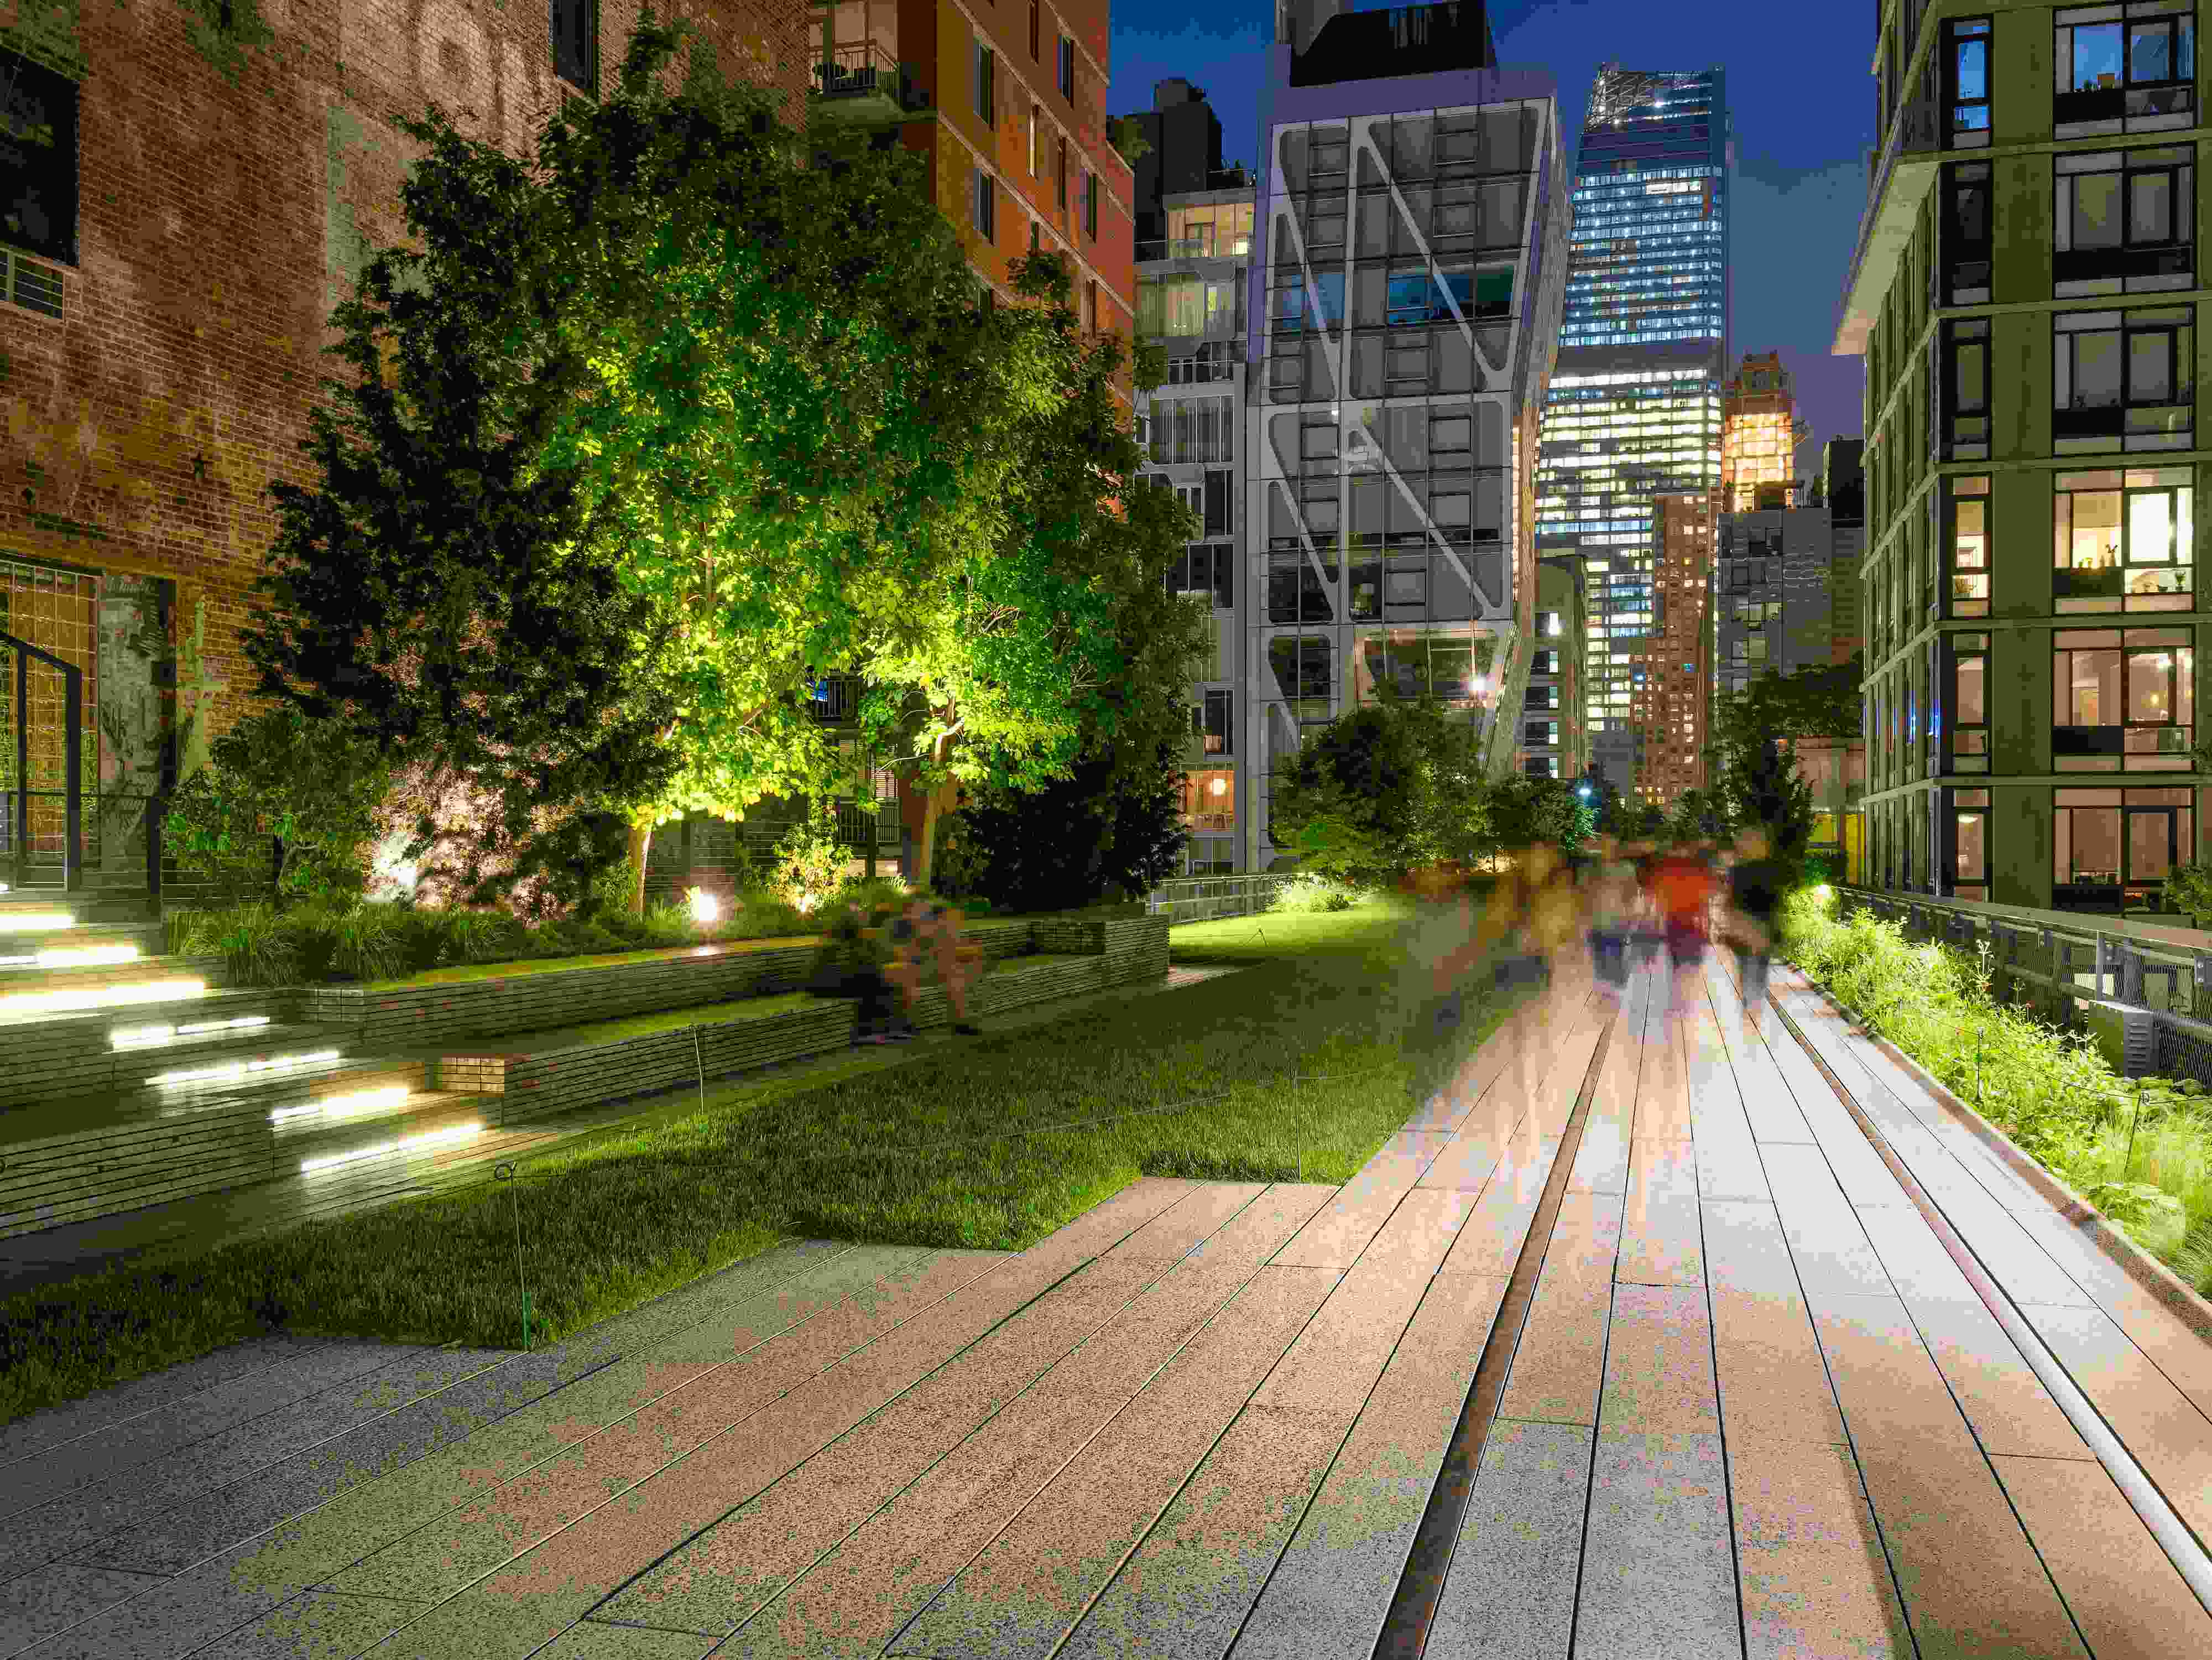 Visit High Line, a public park built on a historic freight line